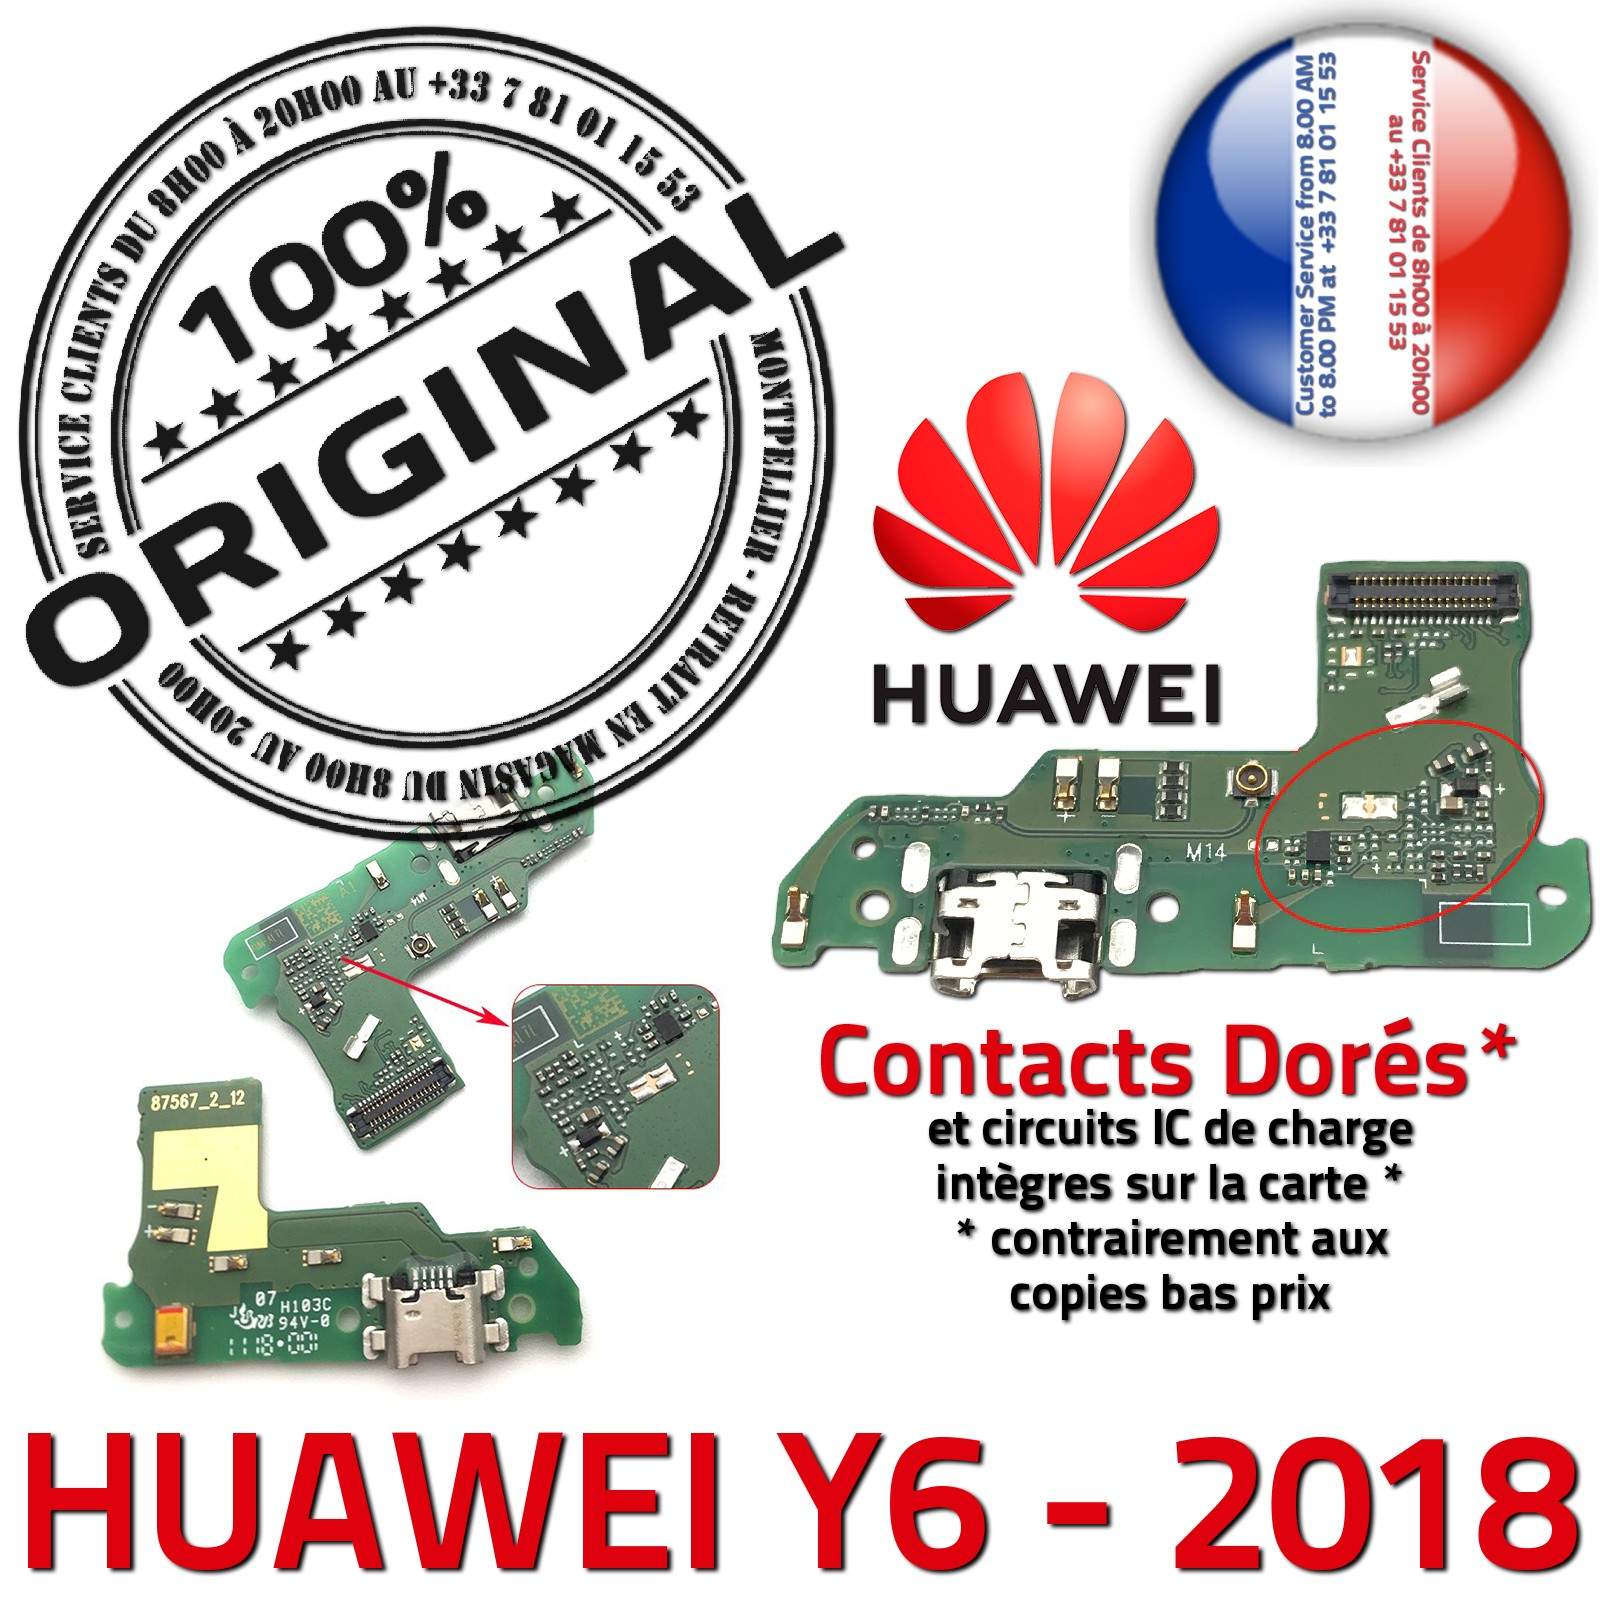 ORIGINAL Huawei Y6 2018 Microphone Téléphone Connecteur Charge Prise Chargeur DOCK USB Nappe OFFICIELLE Qualité Antenne RESEAU